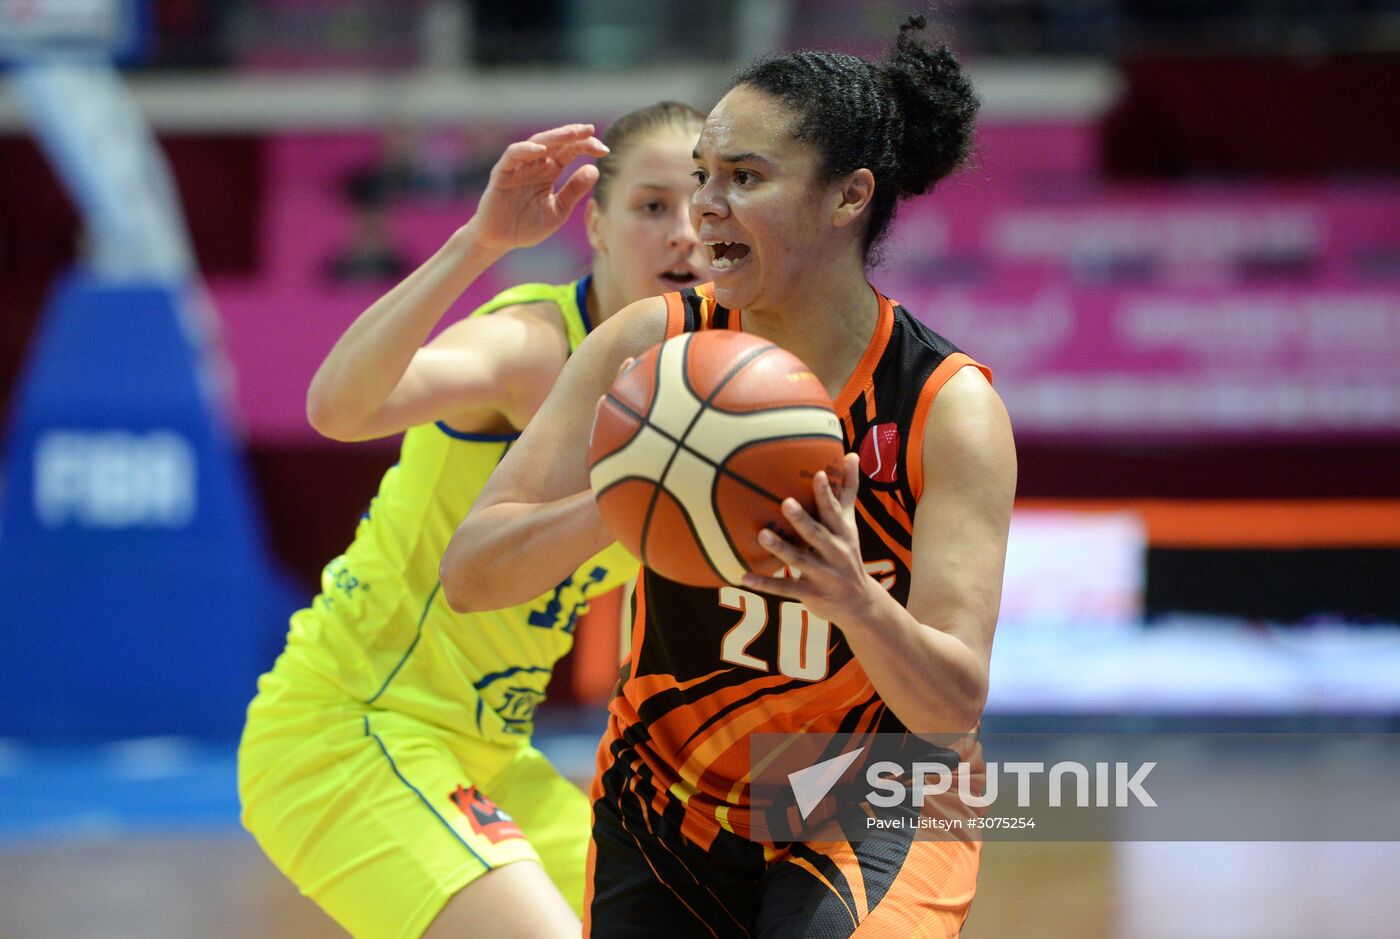 Women's Euroleague Basketball Final Four. Bronze medal match